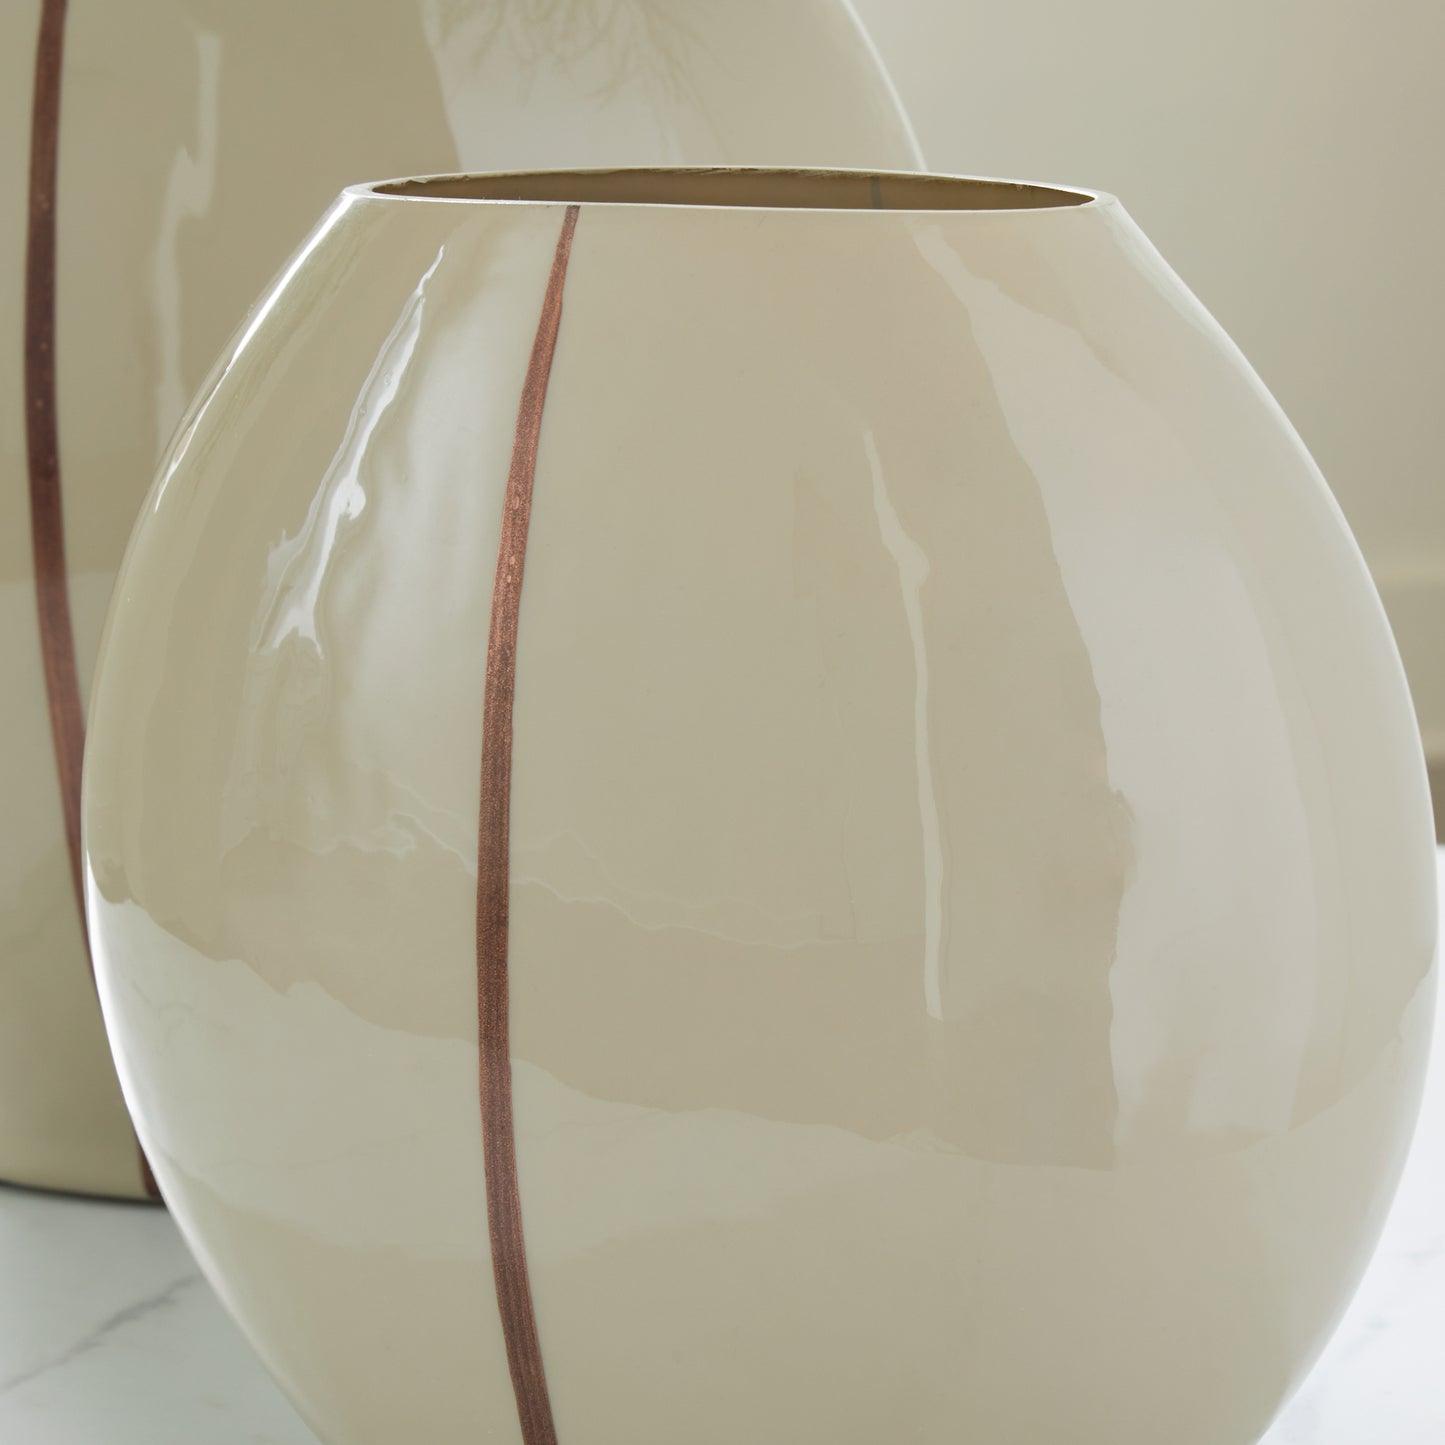 Sheabourne Vase